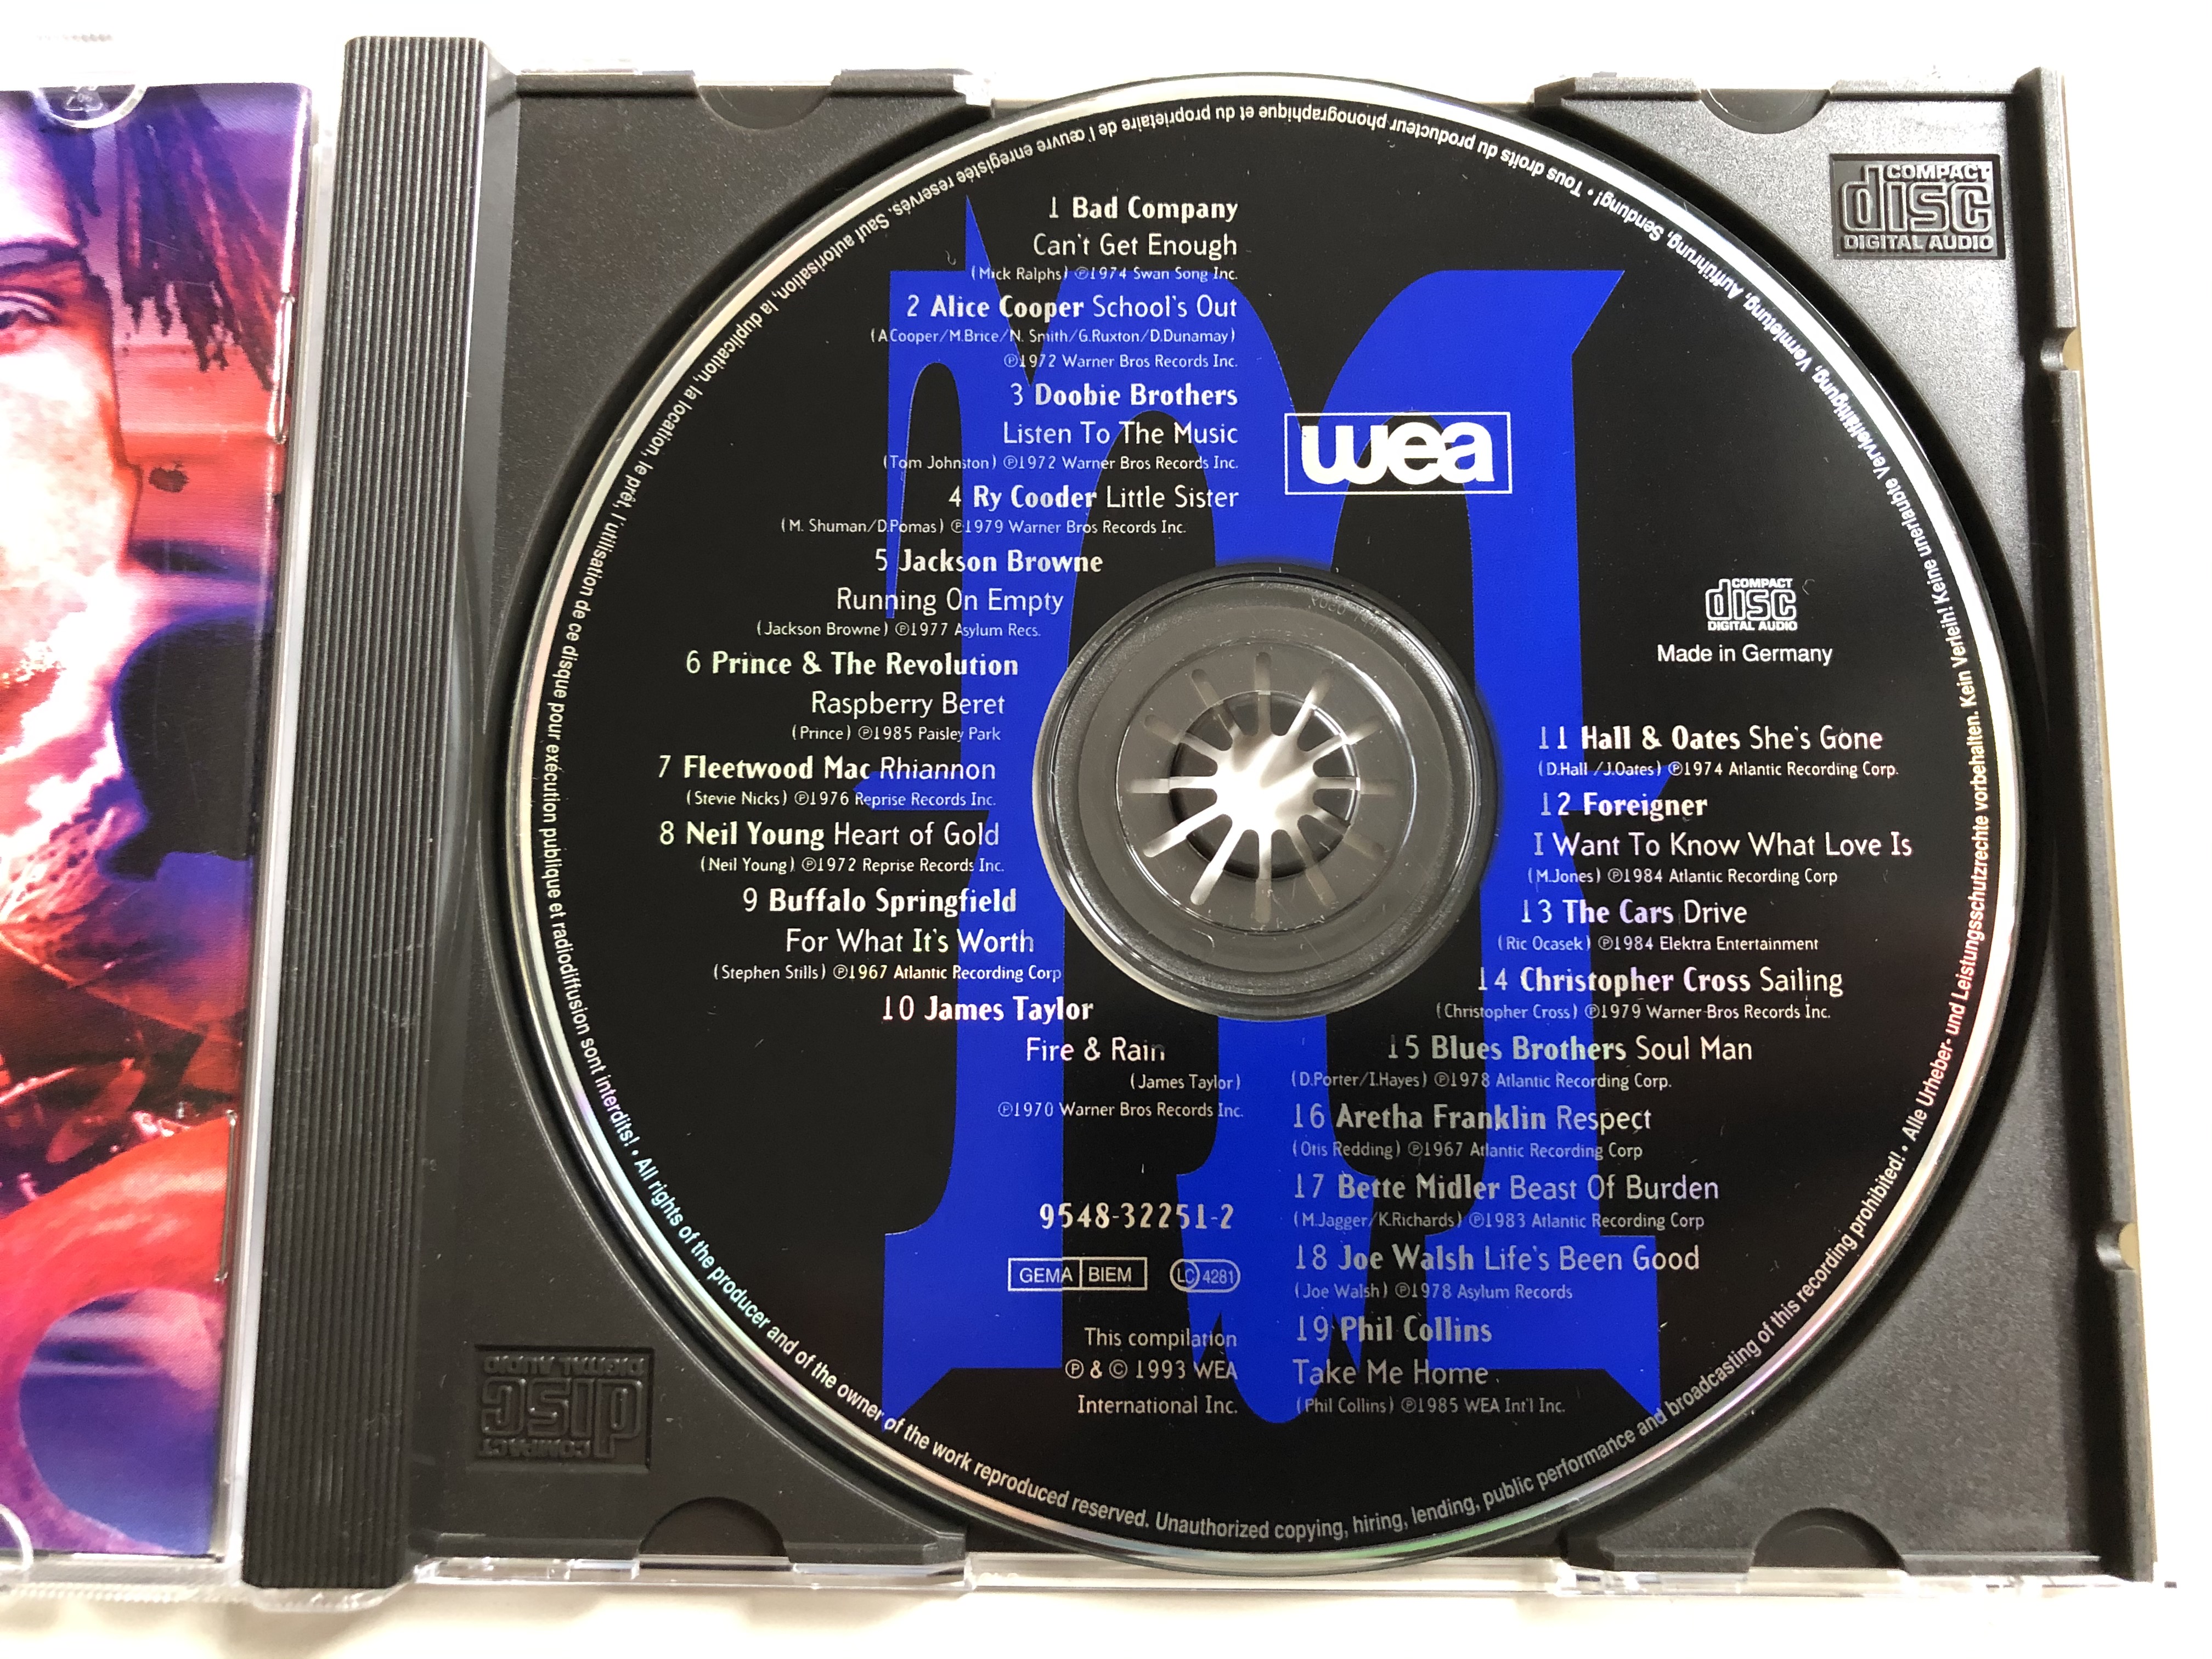 masterpieces-wea-audio-cd-1993-9548-32251-2-12-.jpg